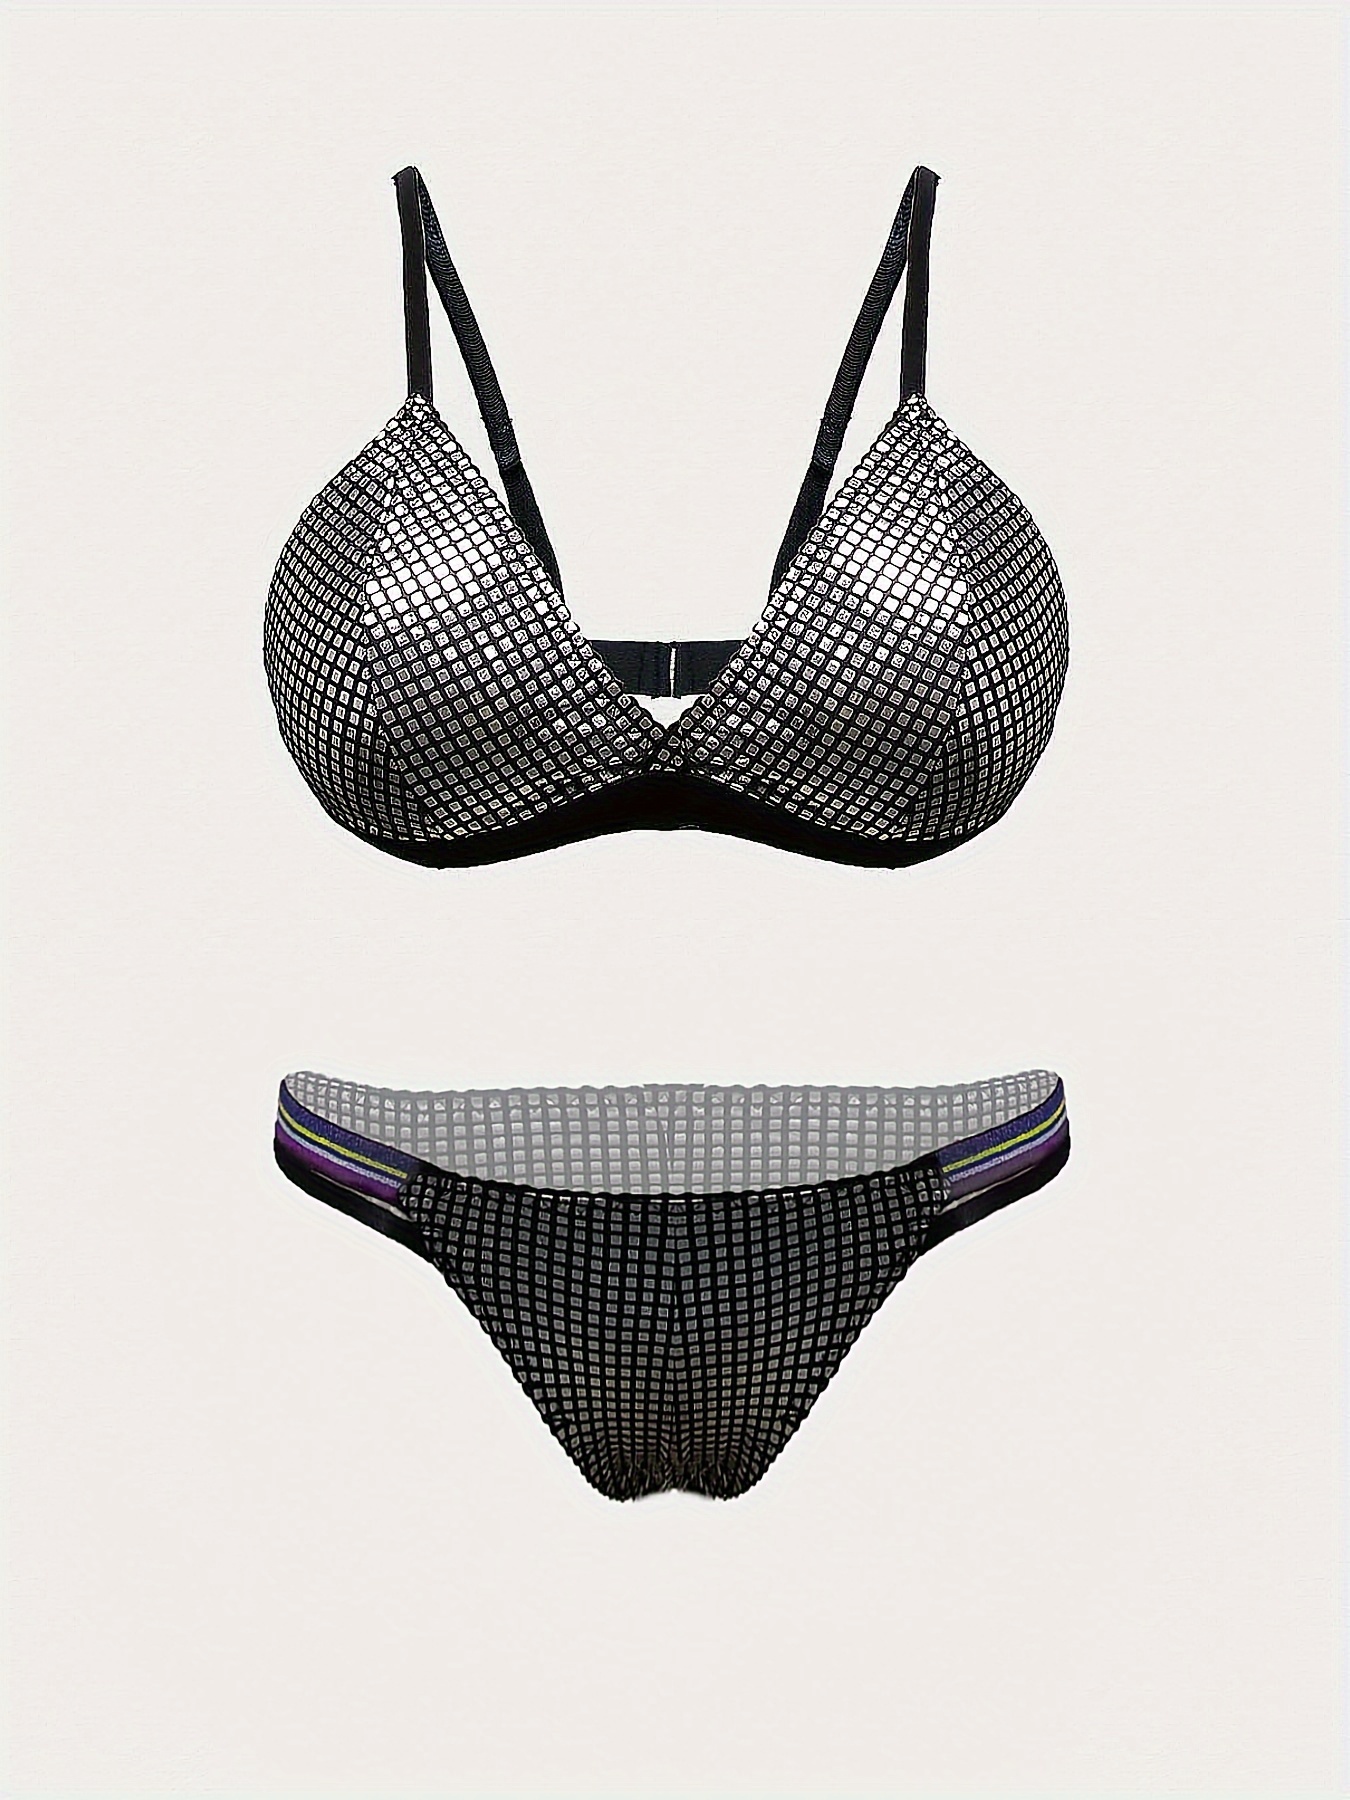 Buy ZXS STYLE Women Silver Metallic Bra Panty Lingerie Set Online